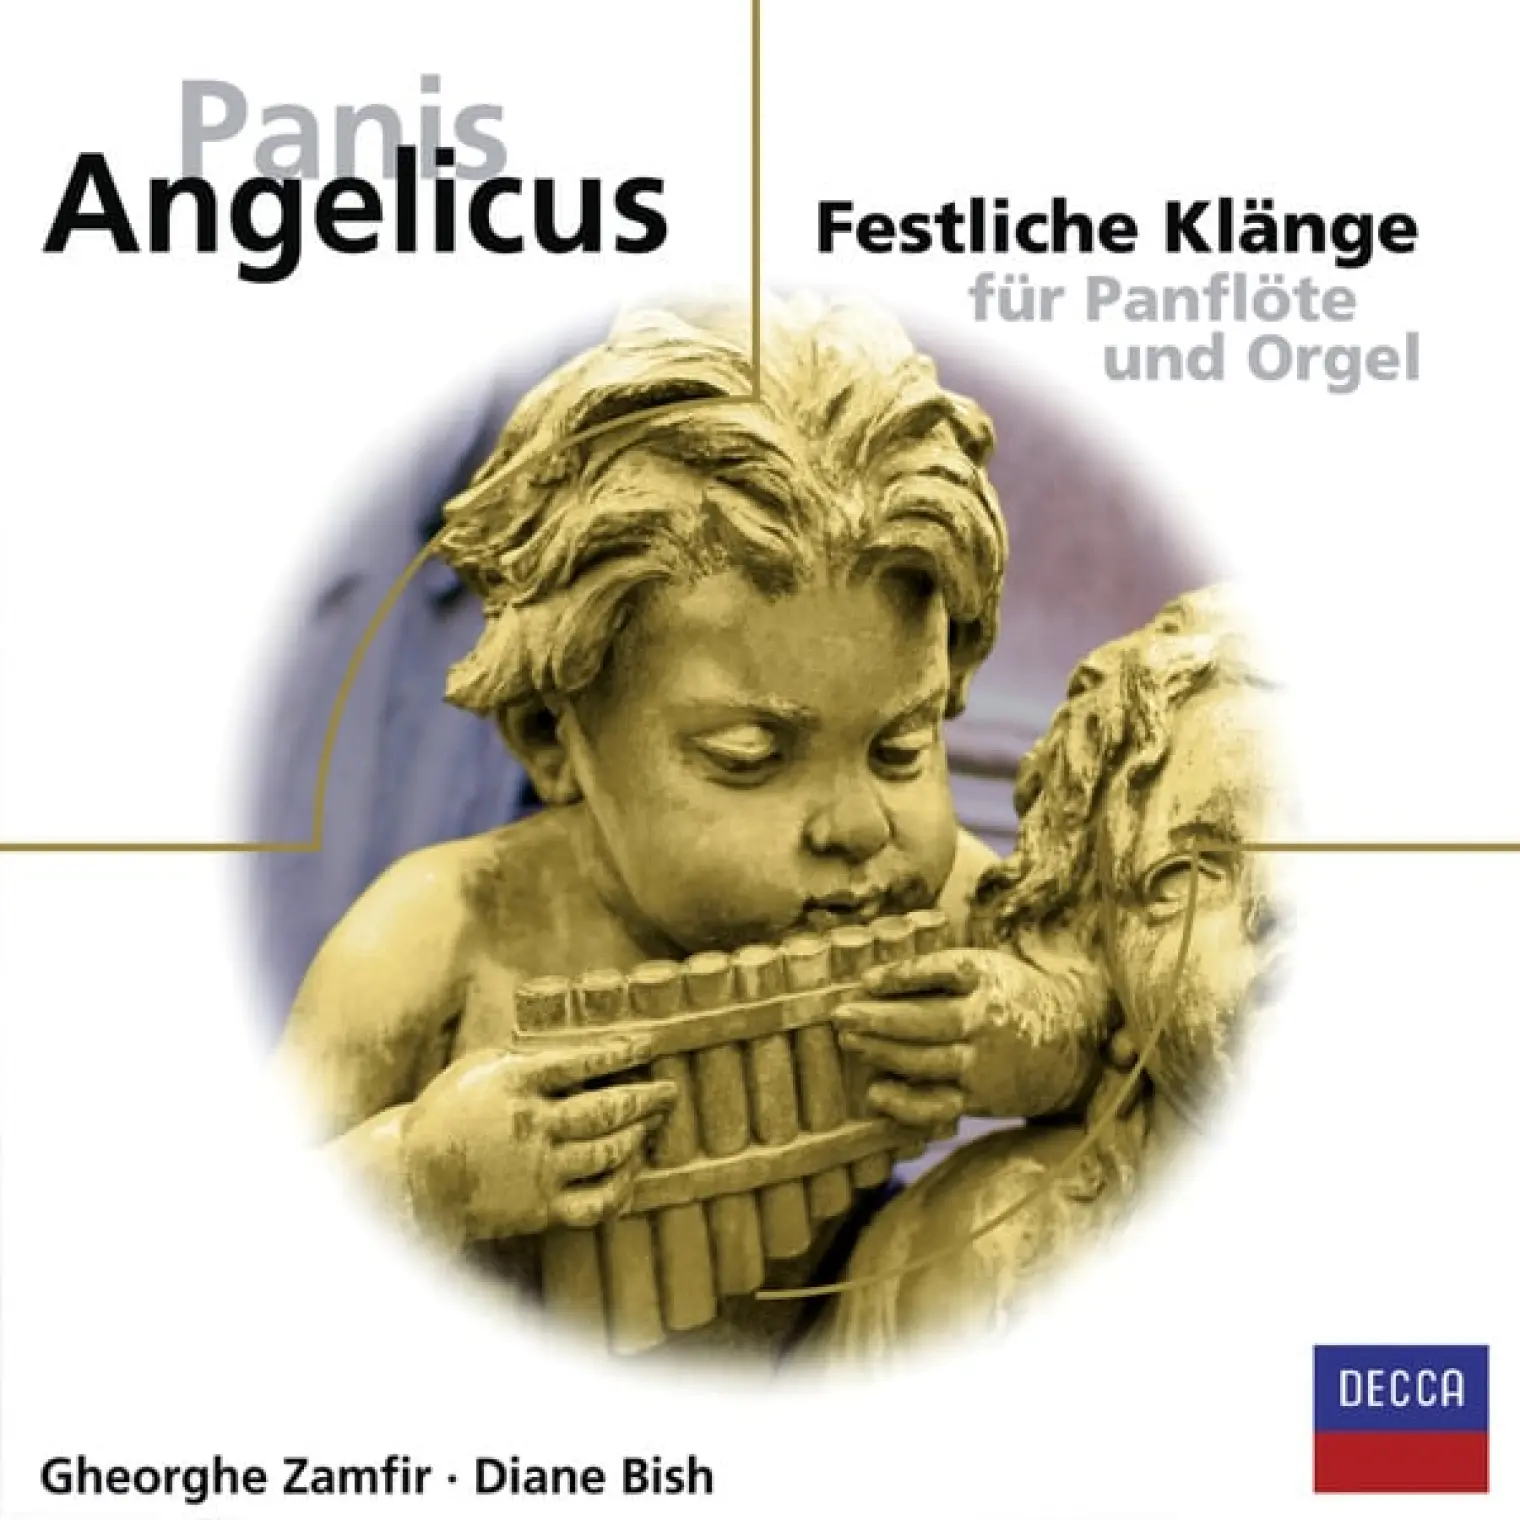 Panis Angelicus - Festliche Klänge für Panflöte -  Gheorghe Zamfir 